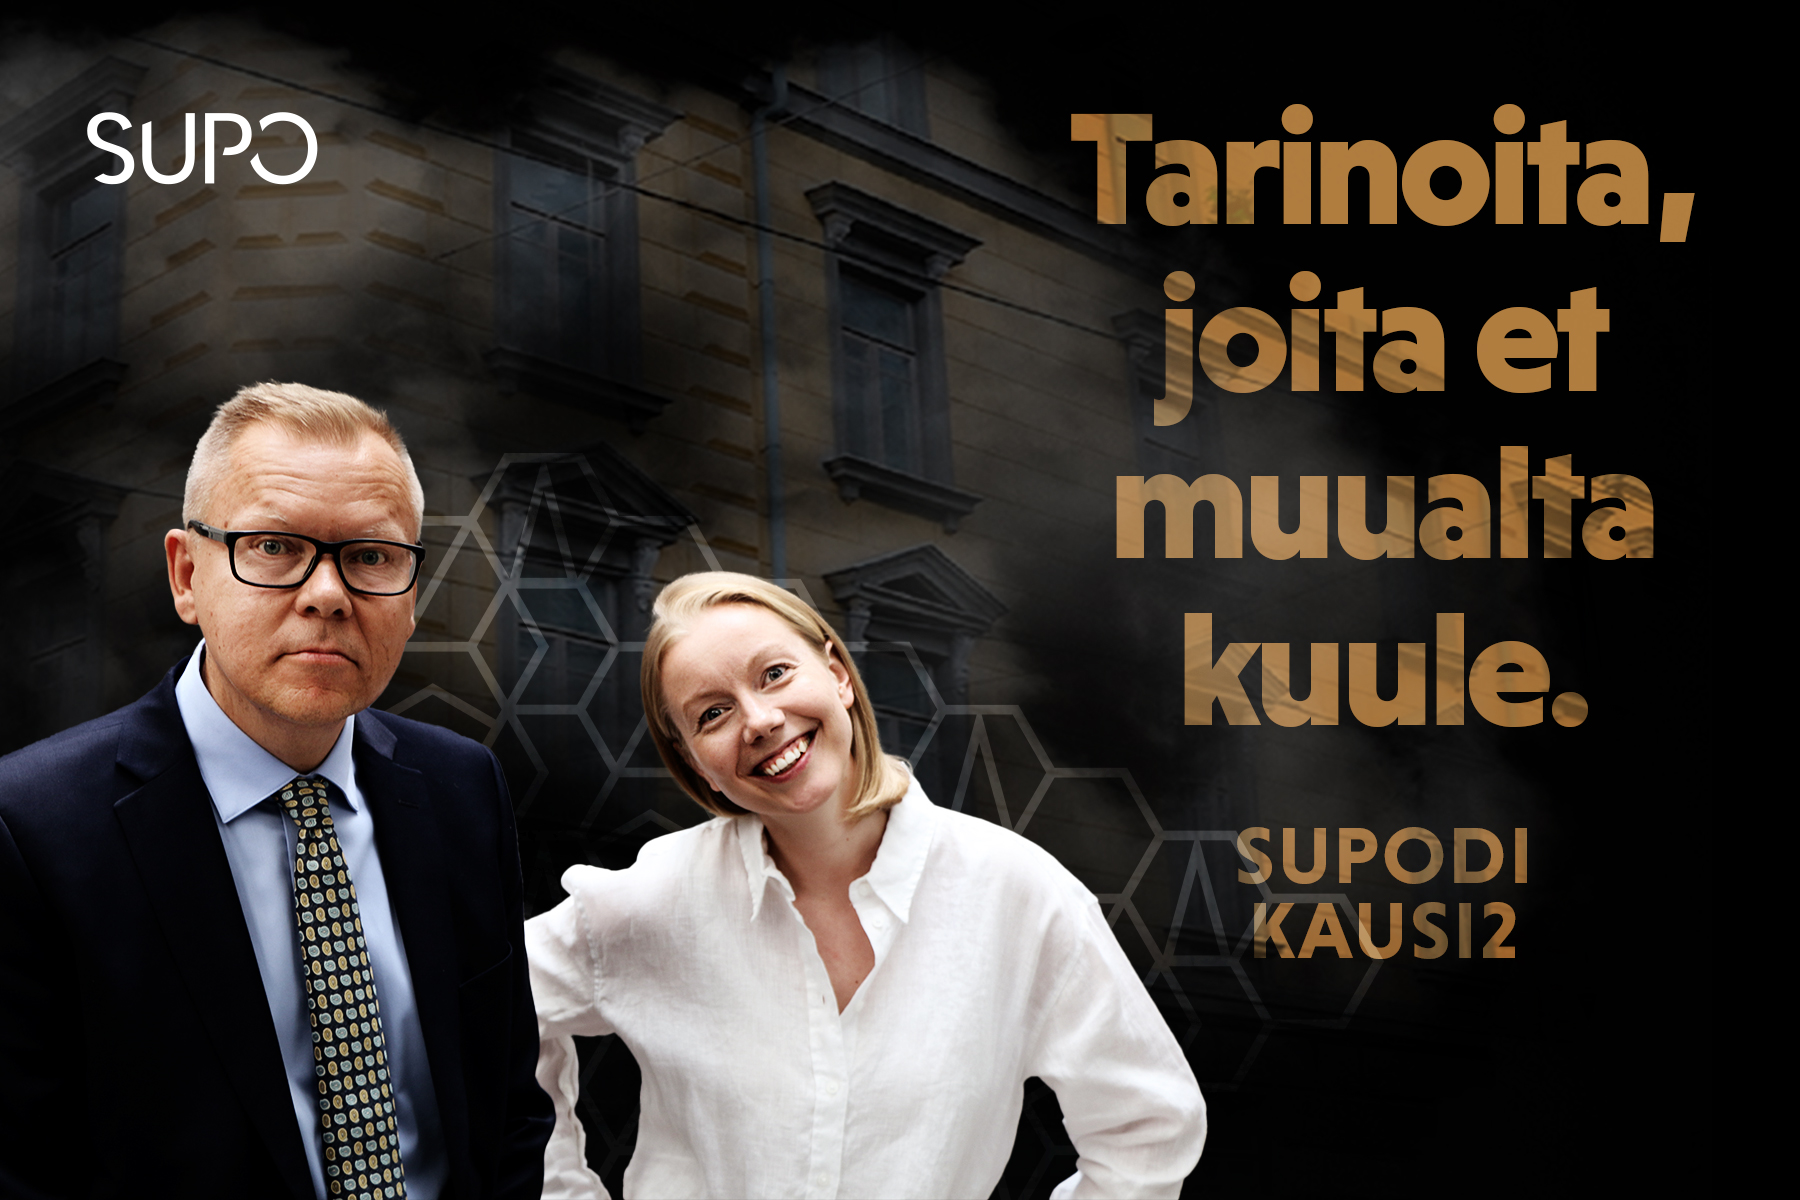 Kuvituskuva - kuvassa Pekka Hiltunen ja Saana Nilsson.